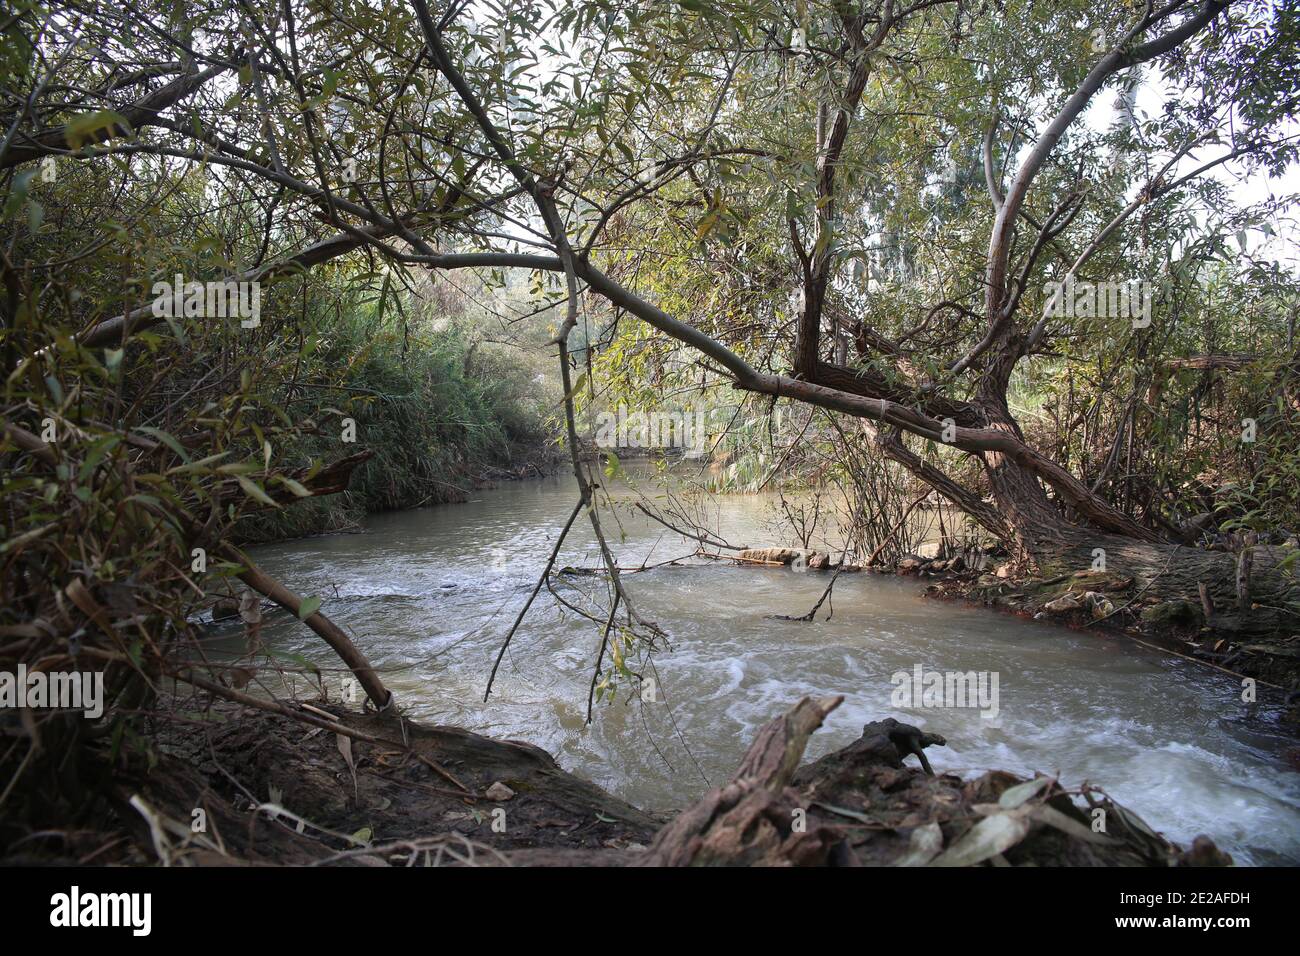 Fuori dai sentieri battuti in Israele, UN sentiero naturale Le rive del fiume Yarkon Foto Stock